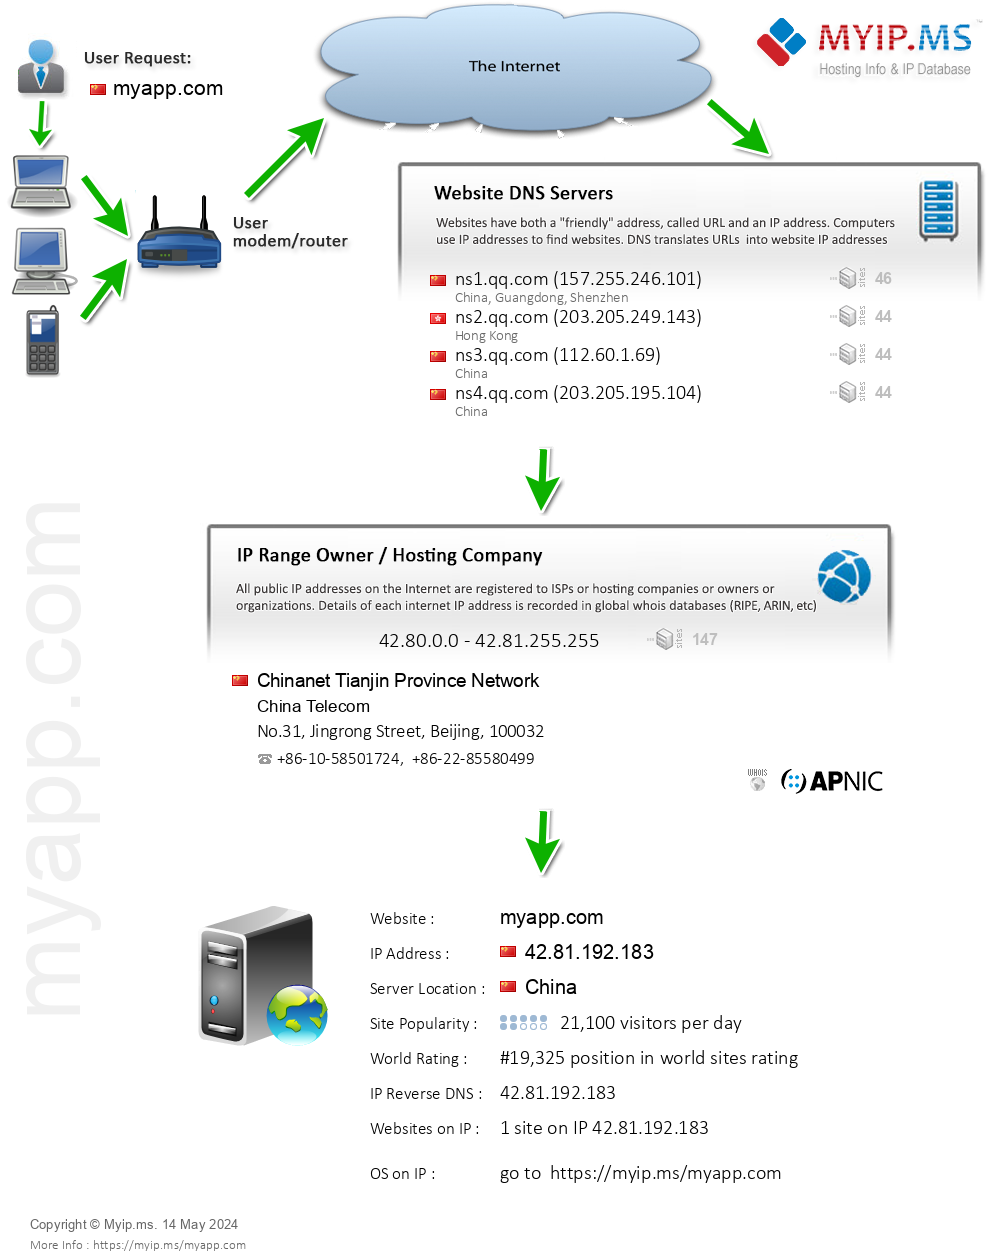 Myapp.com - Website Hosting Visual IP Diagram